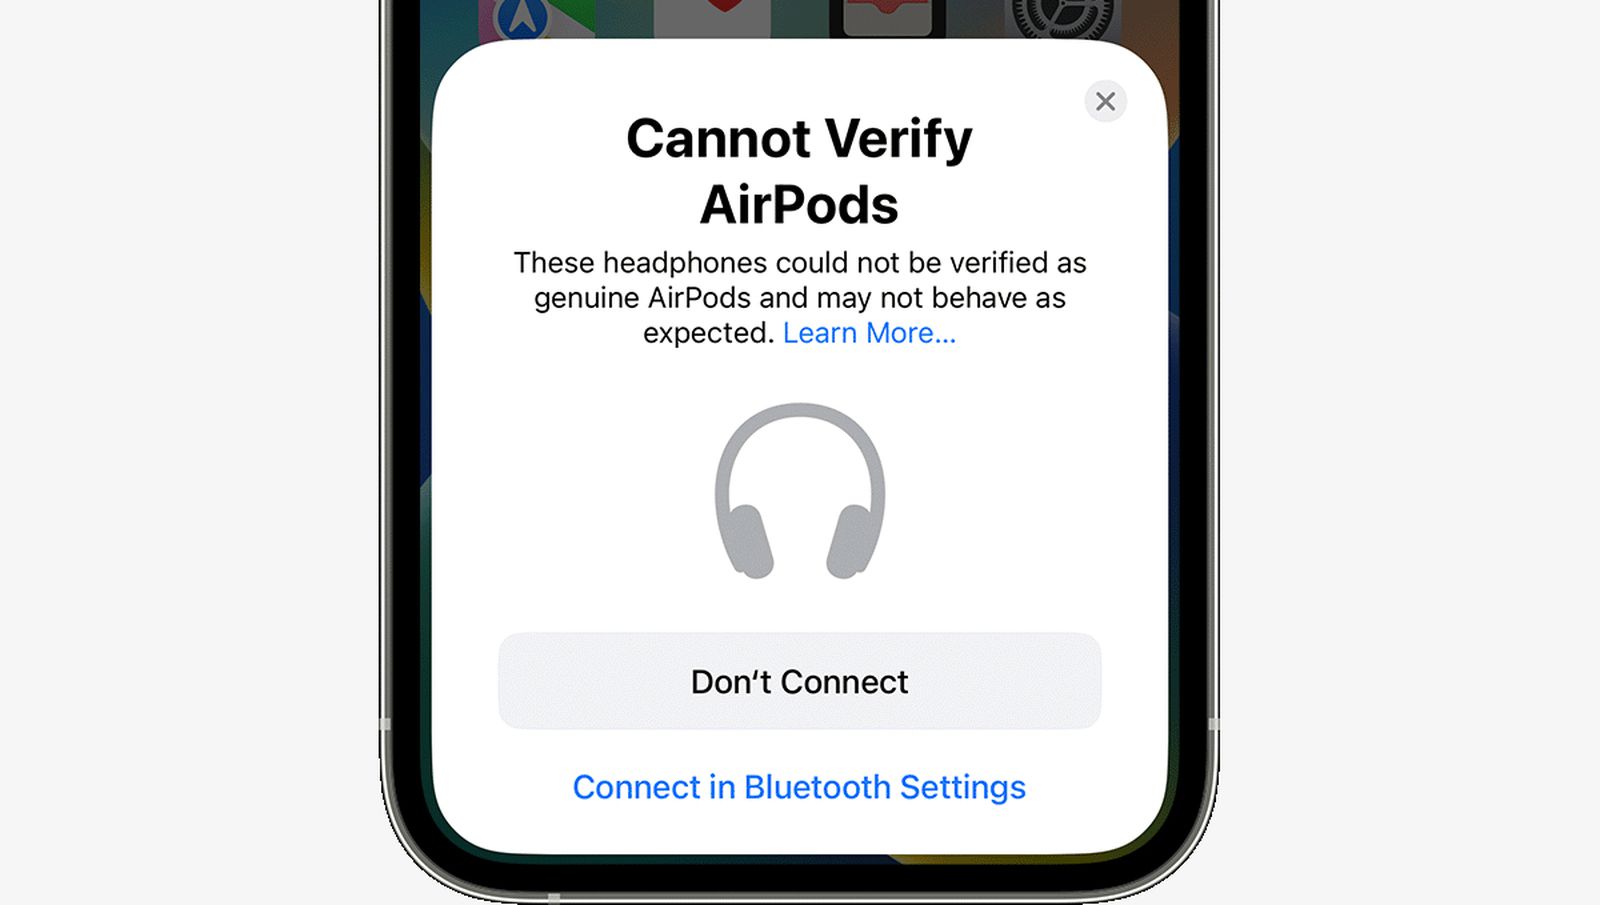 Apple explica que se muestra una nueva alerta de iPhone cuando se conectan AirPods falsos